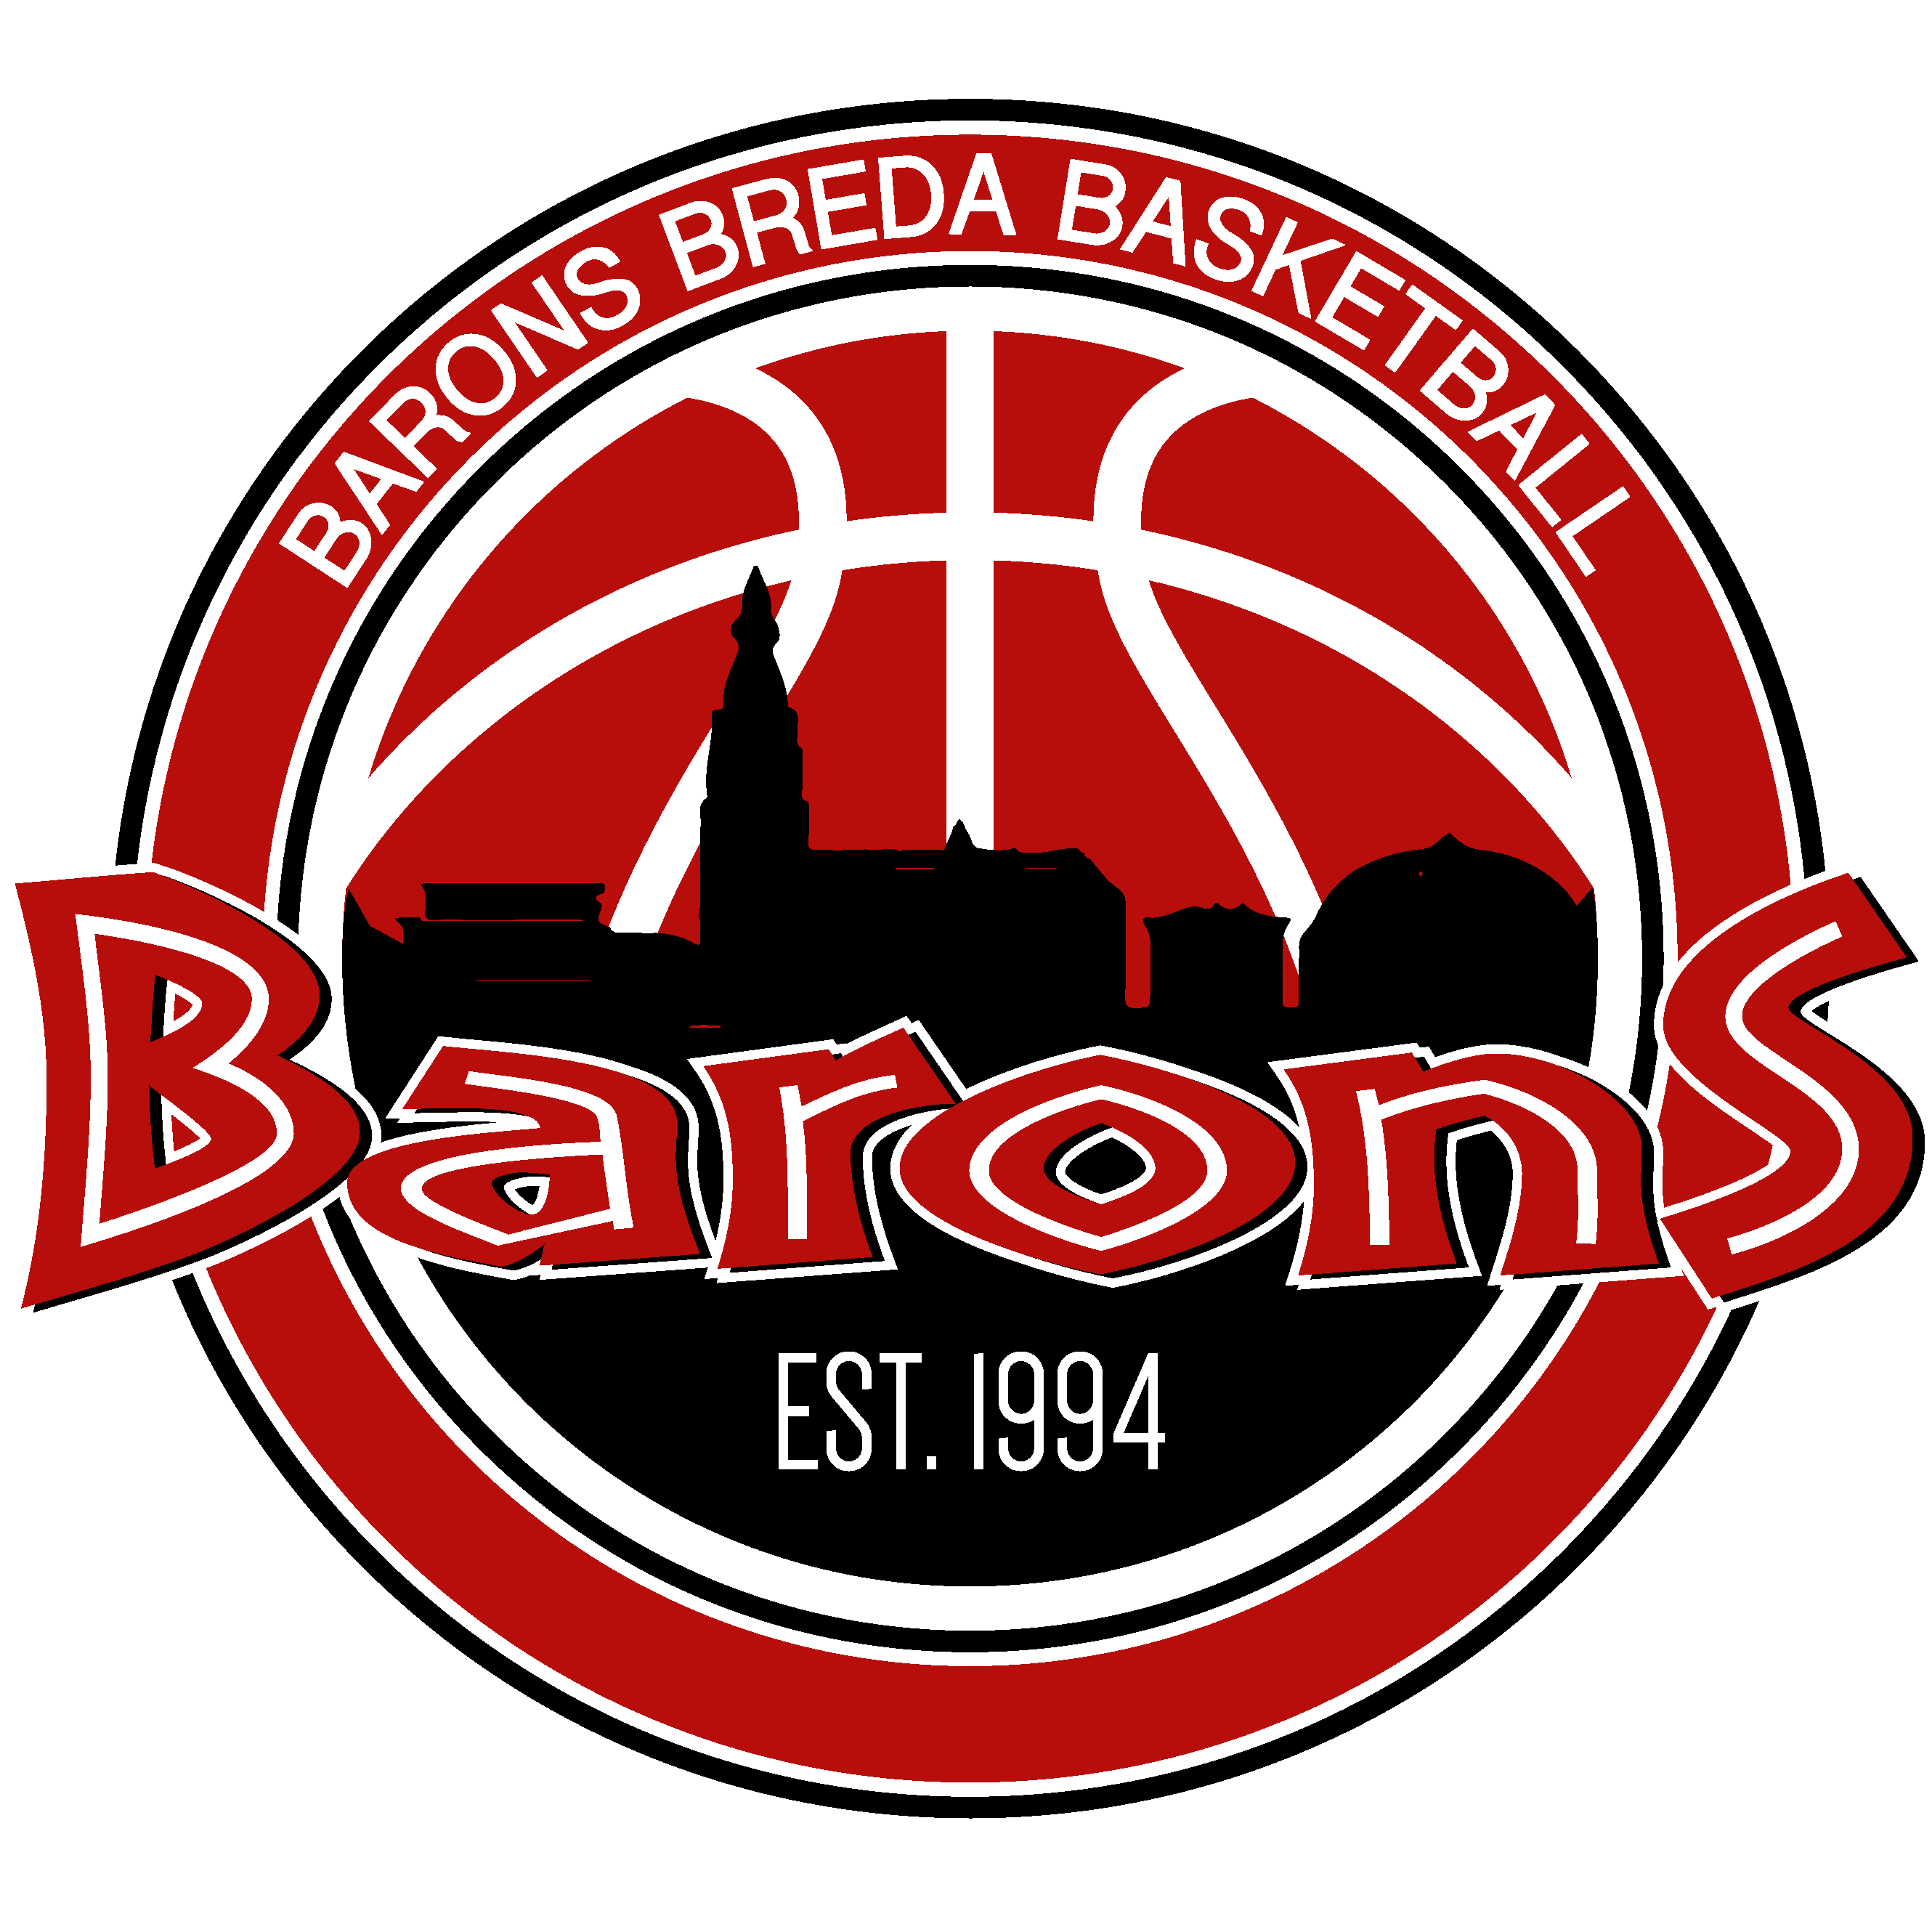 Barons Breda Basketbal